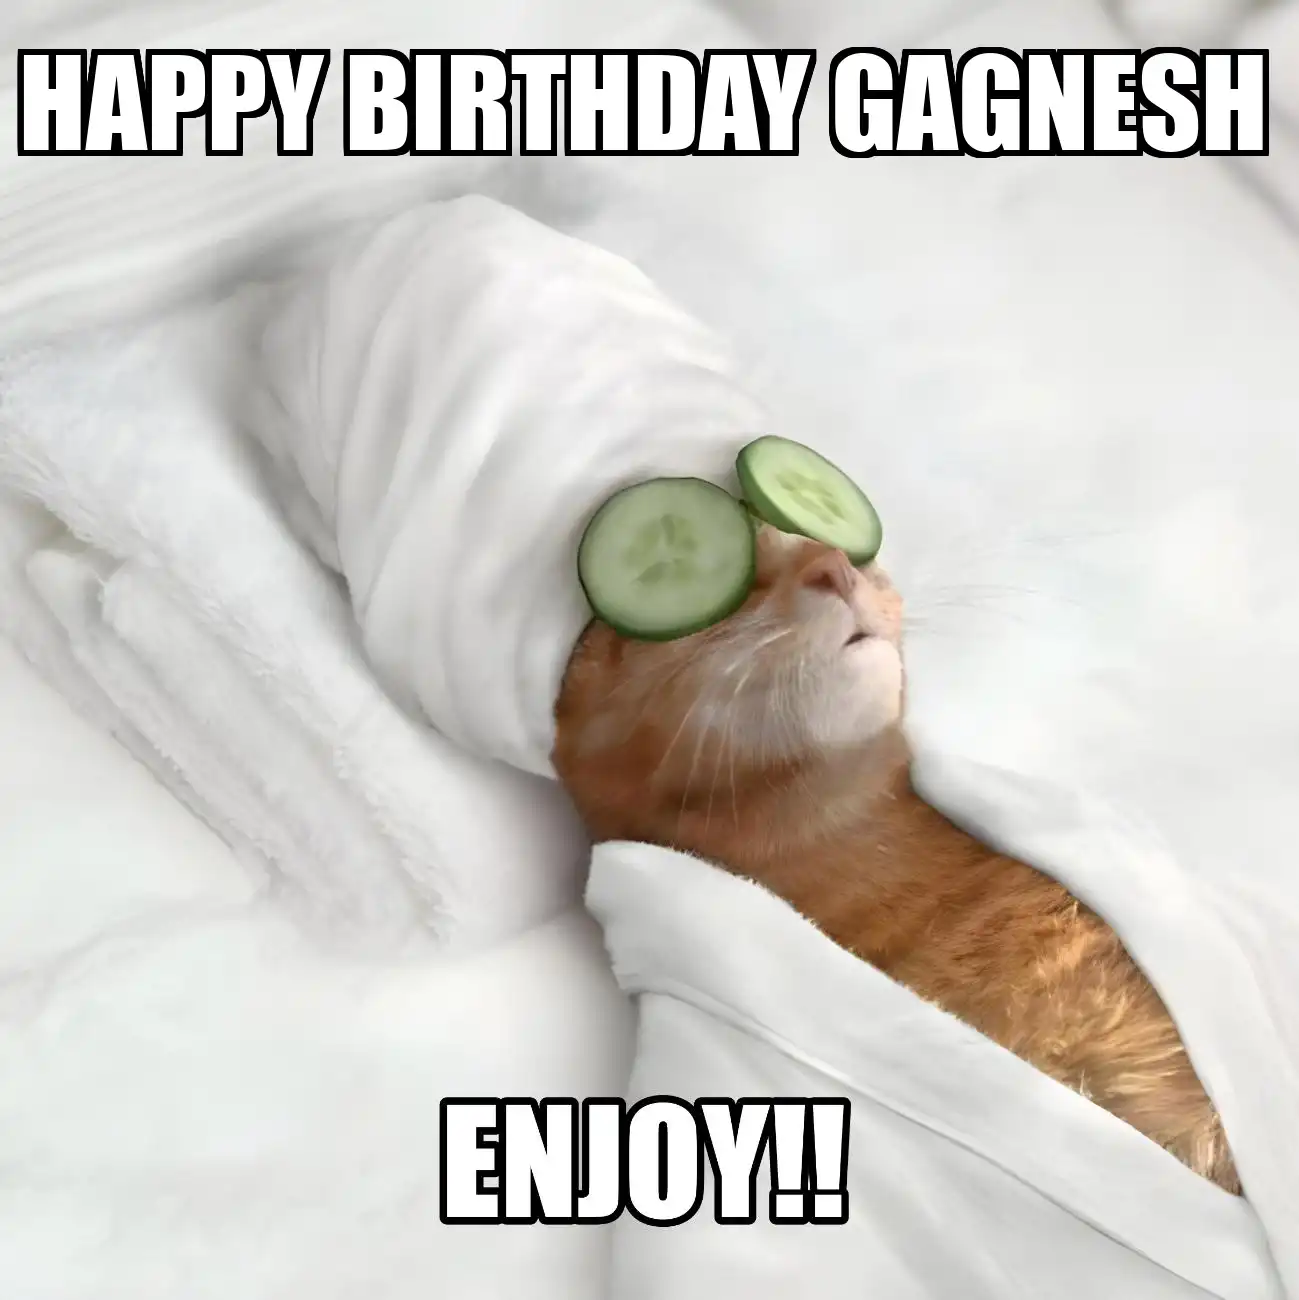 Happy Birthday Gagnesh Enjoy Cat Meme